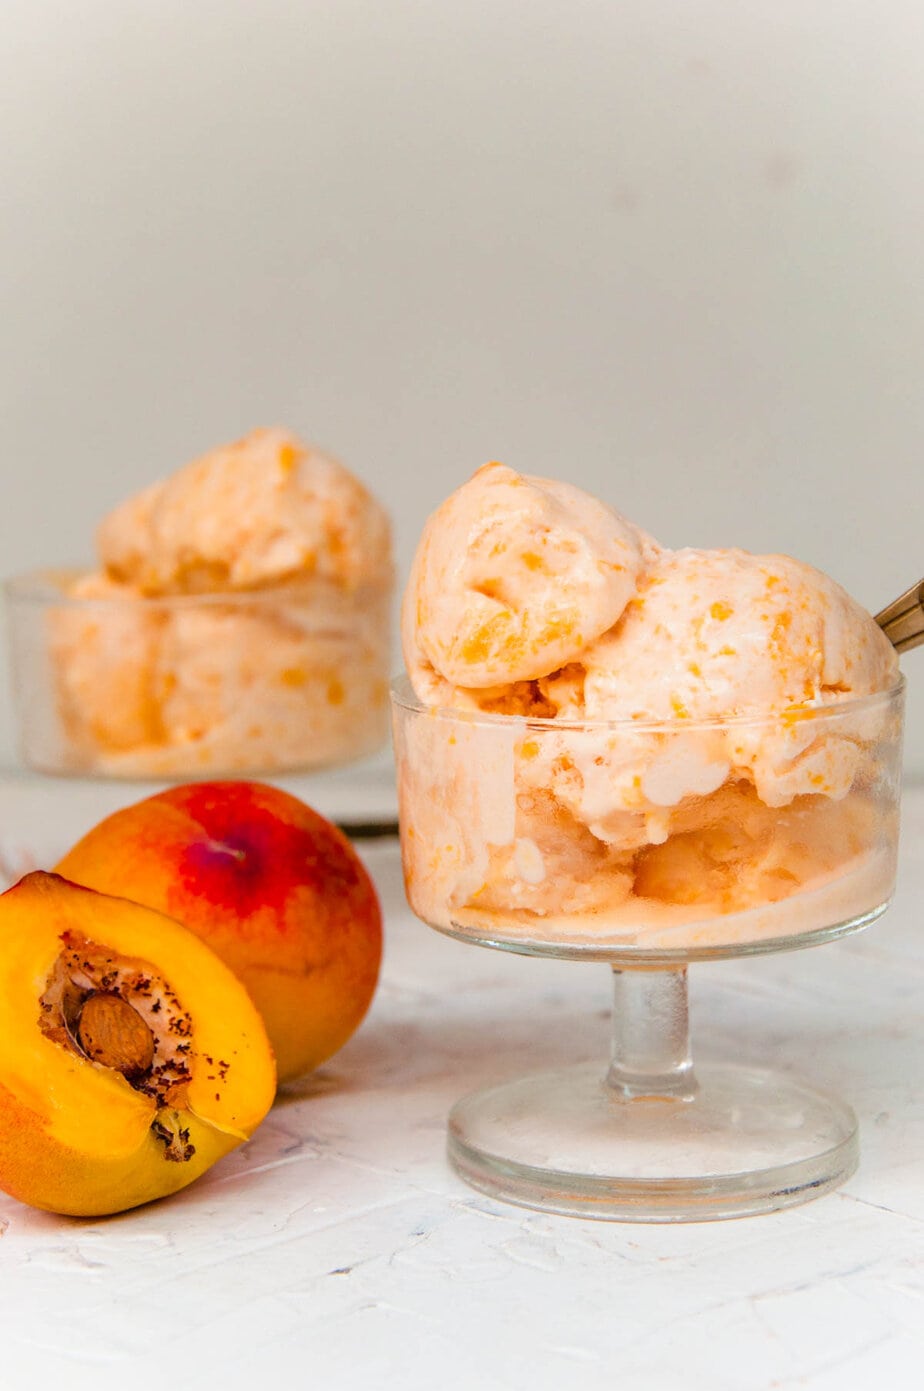 Peach ice cream scoops in ice cream cups.